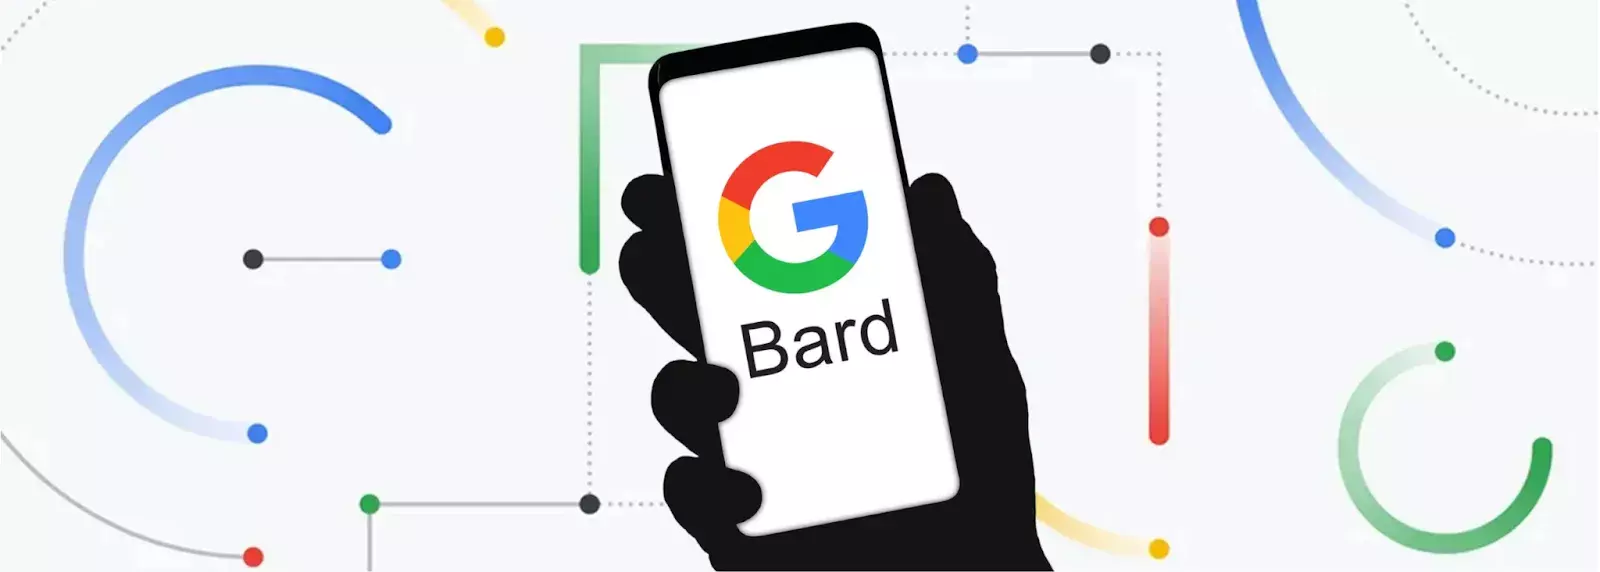 Ce este Google Bard Care sunt caracteristicile principale și în ce scop poate fi folosit